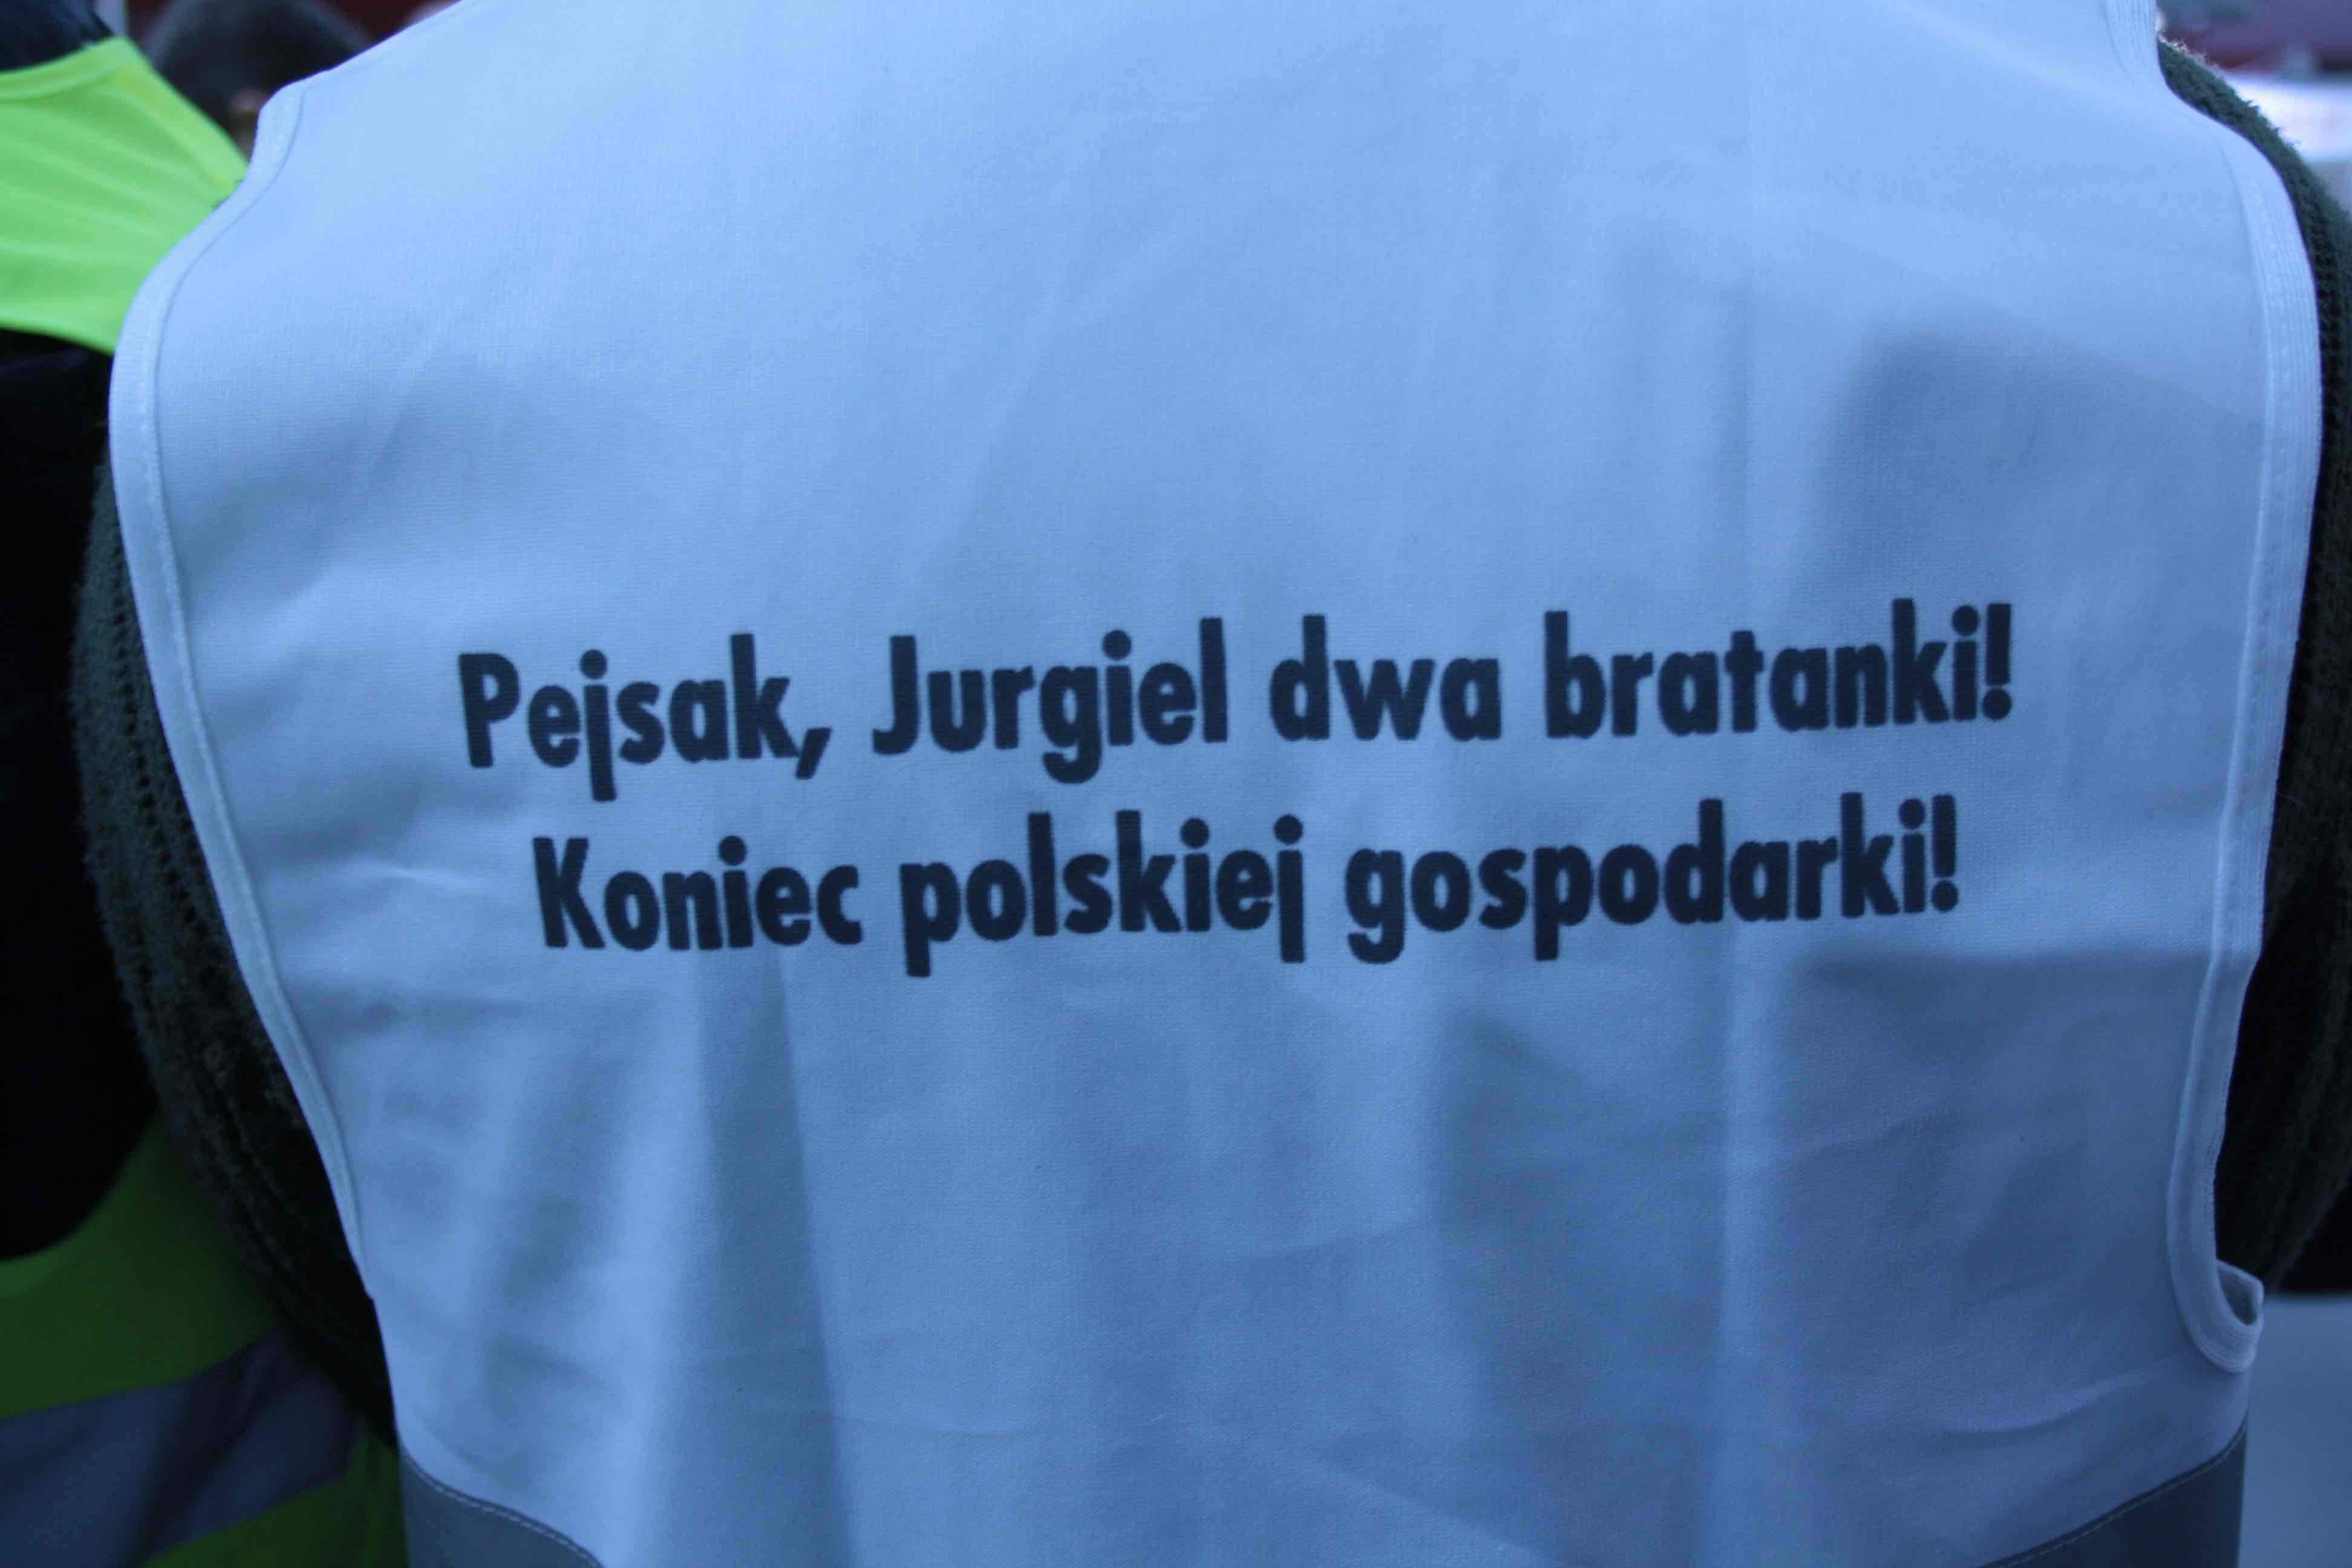 Jurgiel, Pejsak dwa bratanki! Koniec polskiej gospodarki!